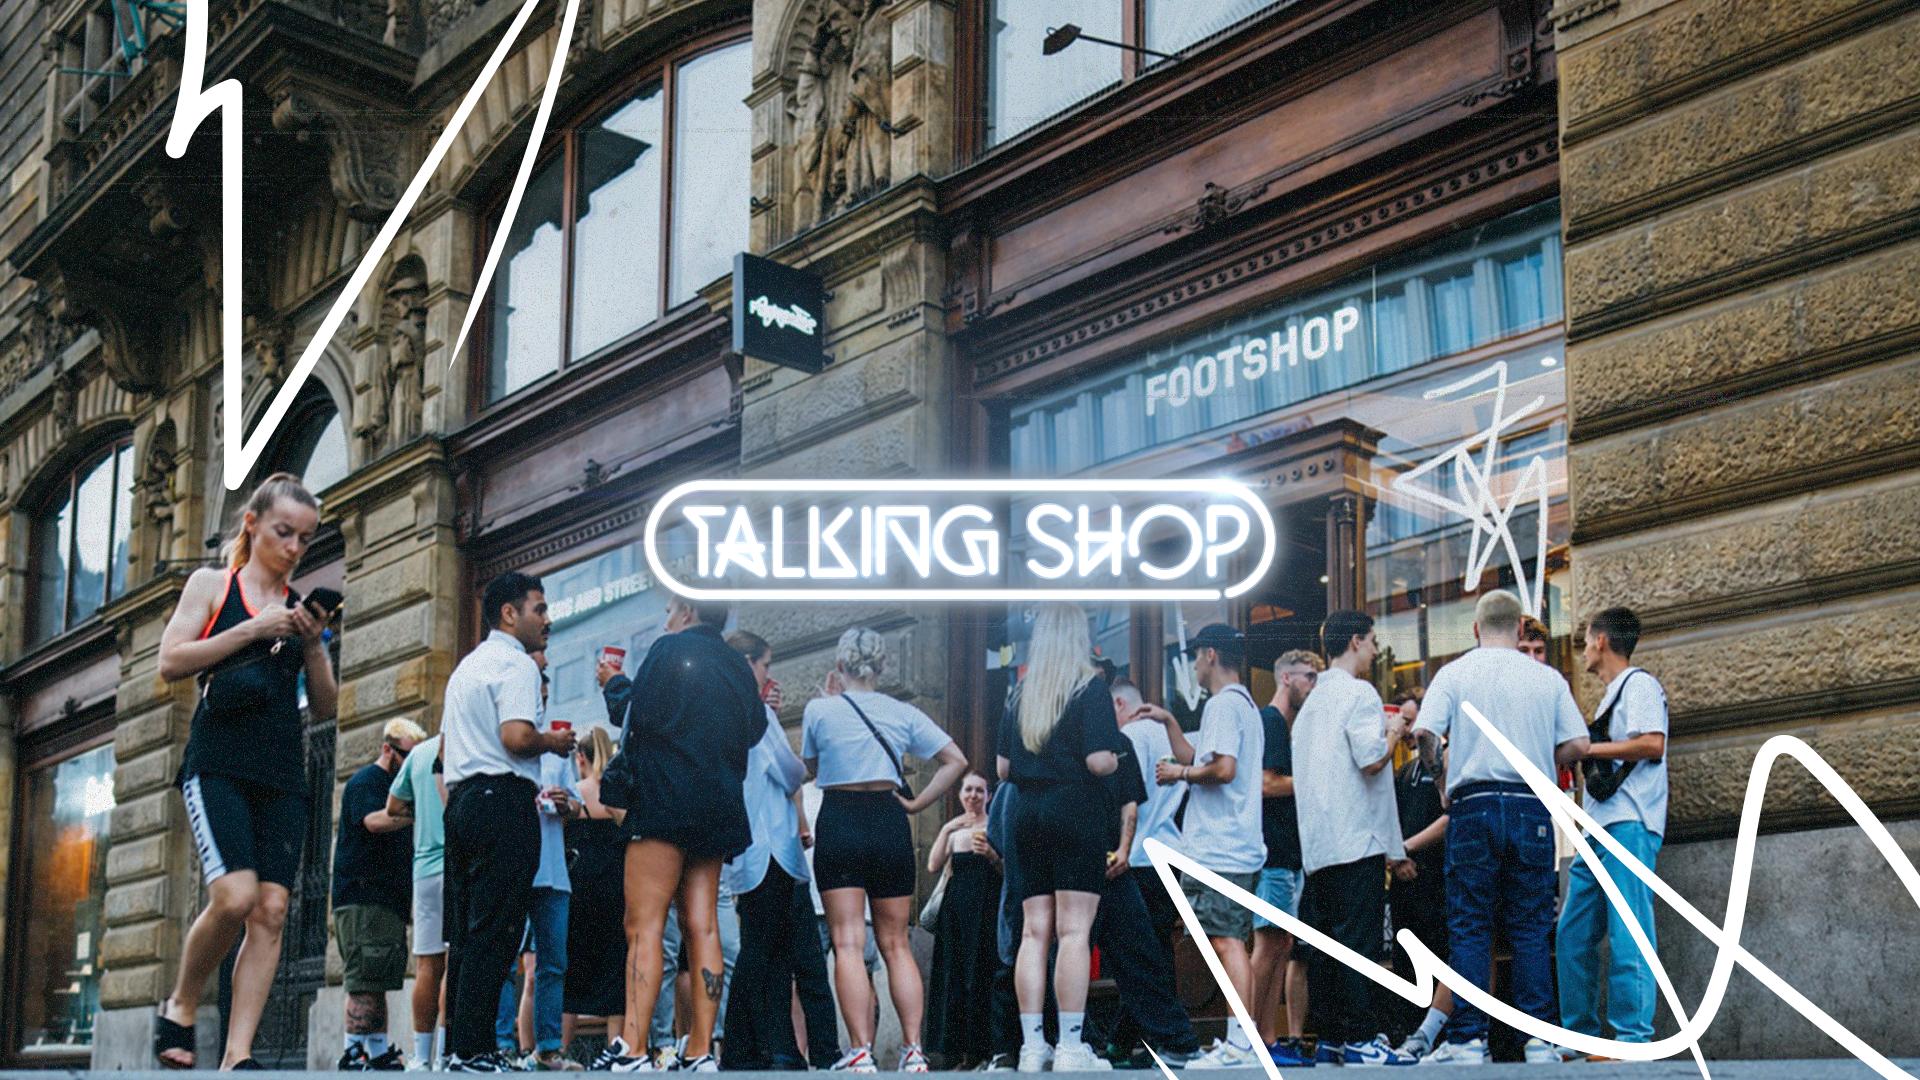 Milník! Footshop je oficiální součástí série Nike Talking Shop v aplikaci SNKRS